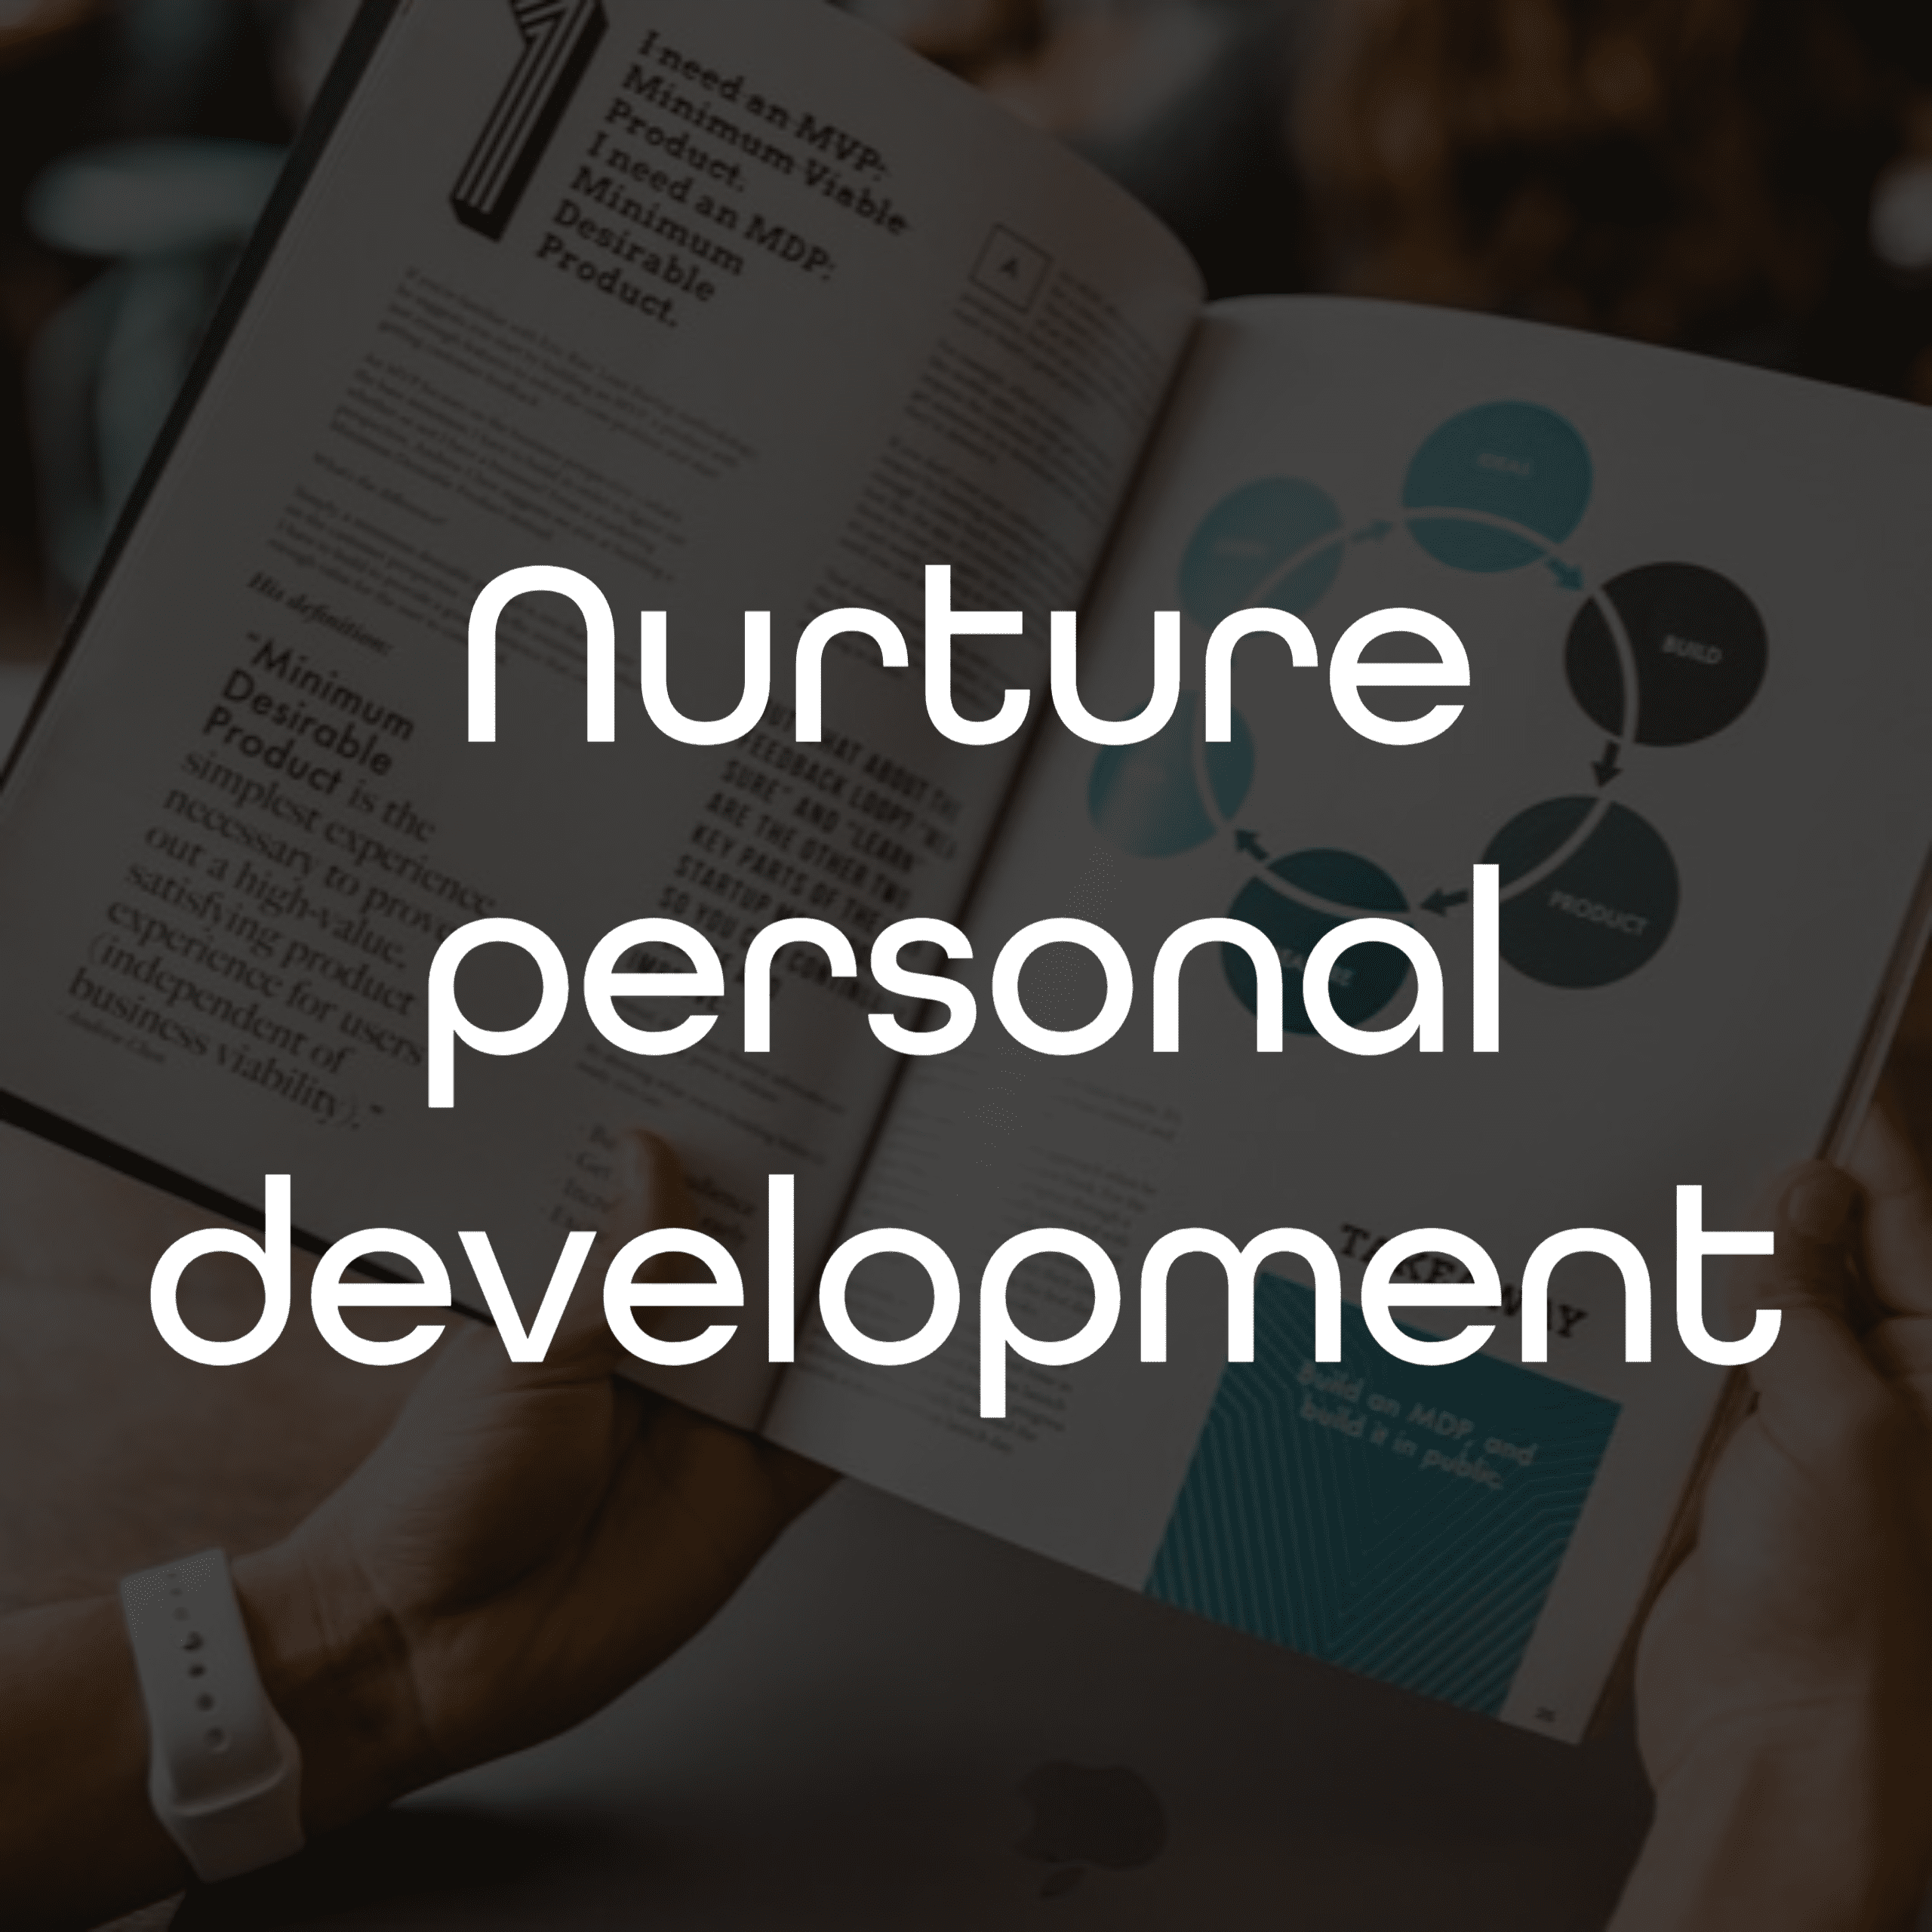 Nurture personal development